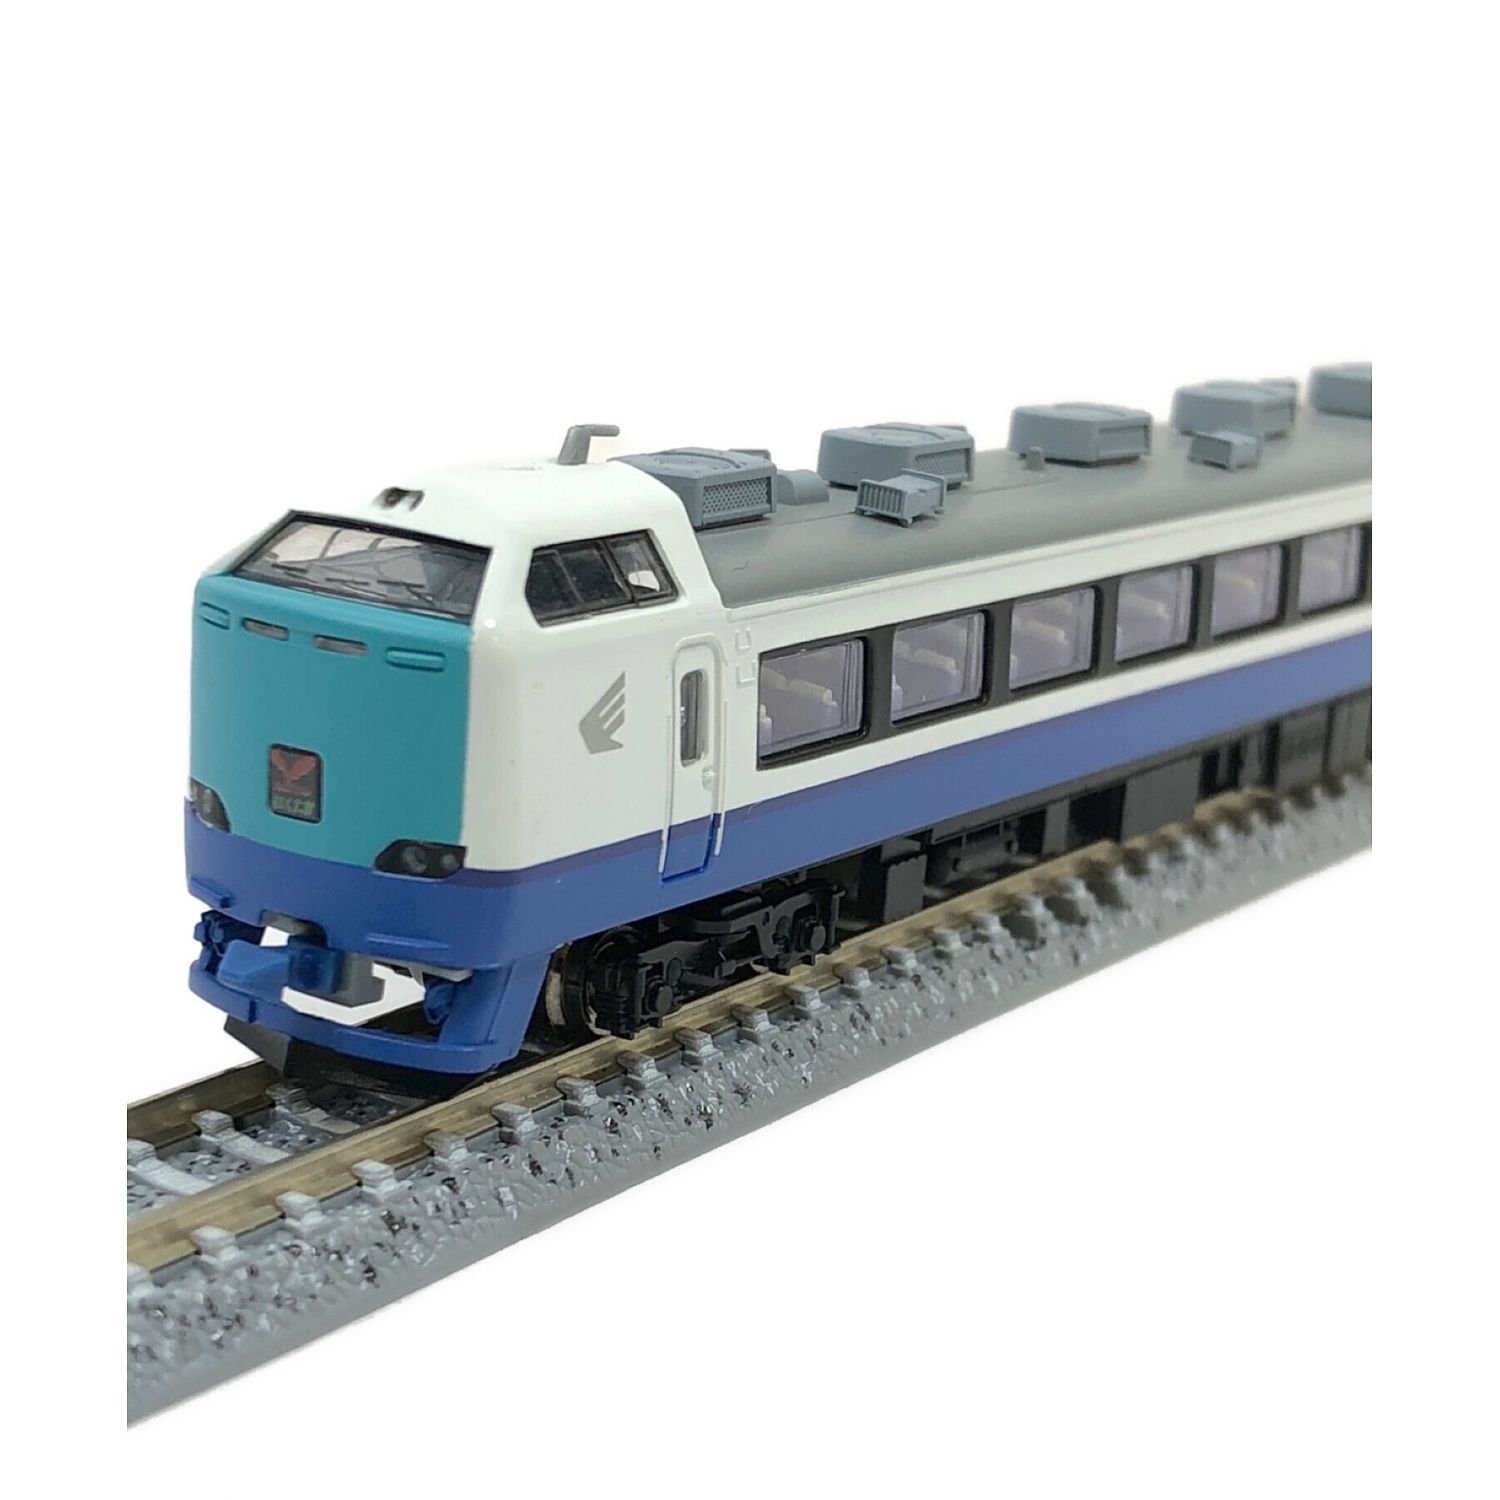 驚きの破格値Nゲージ TOMIX 98407 JR 485系特急電車(はくたか)基本セット 特急形電車